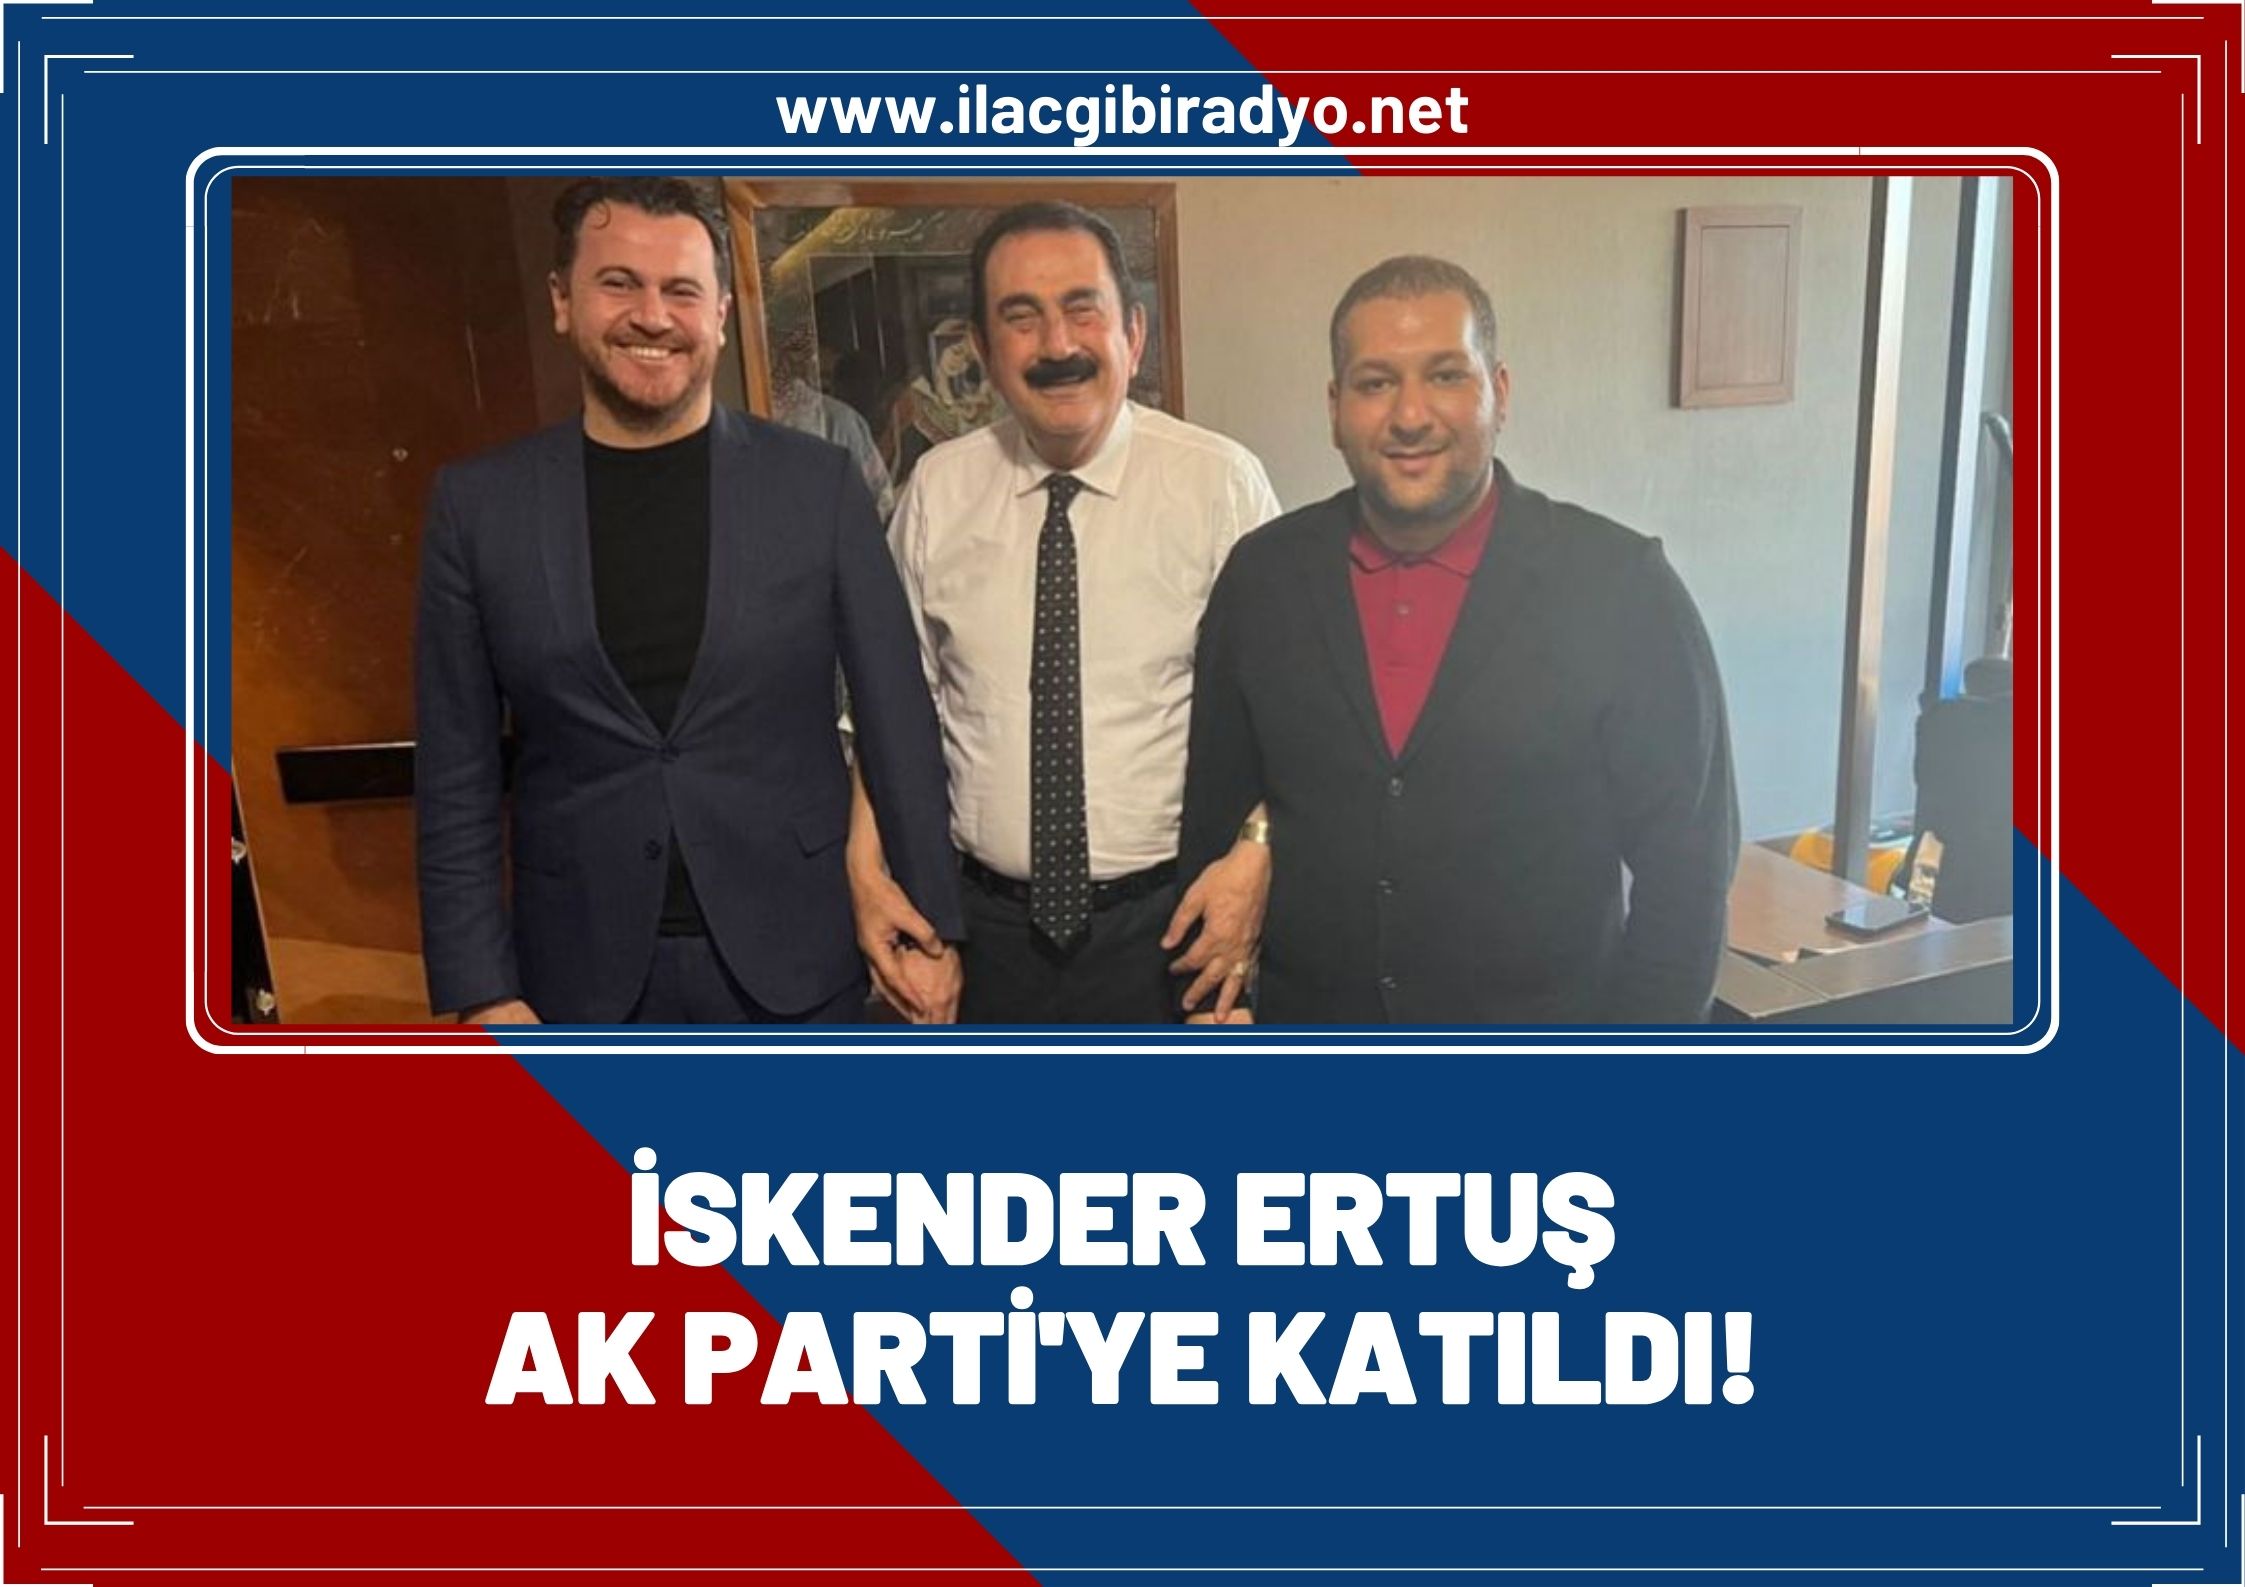 İskender Ertuş AK Parti'ye katıldı!